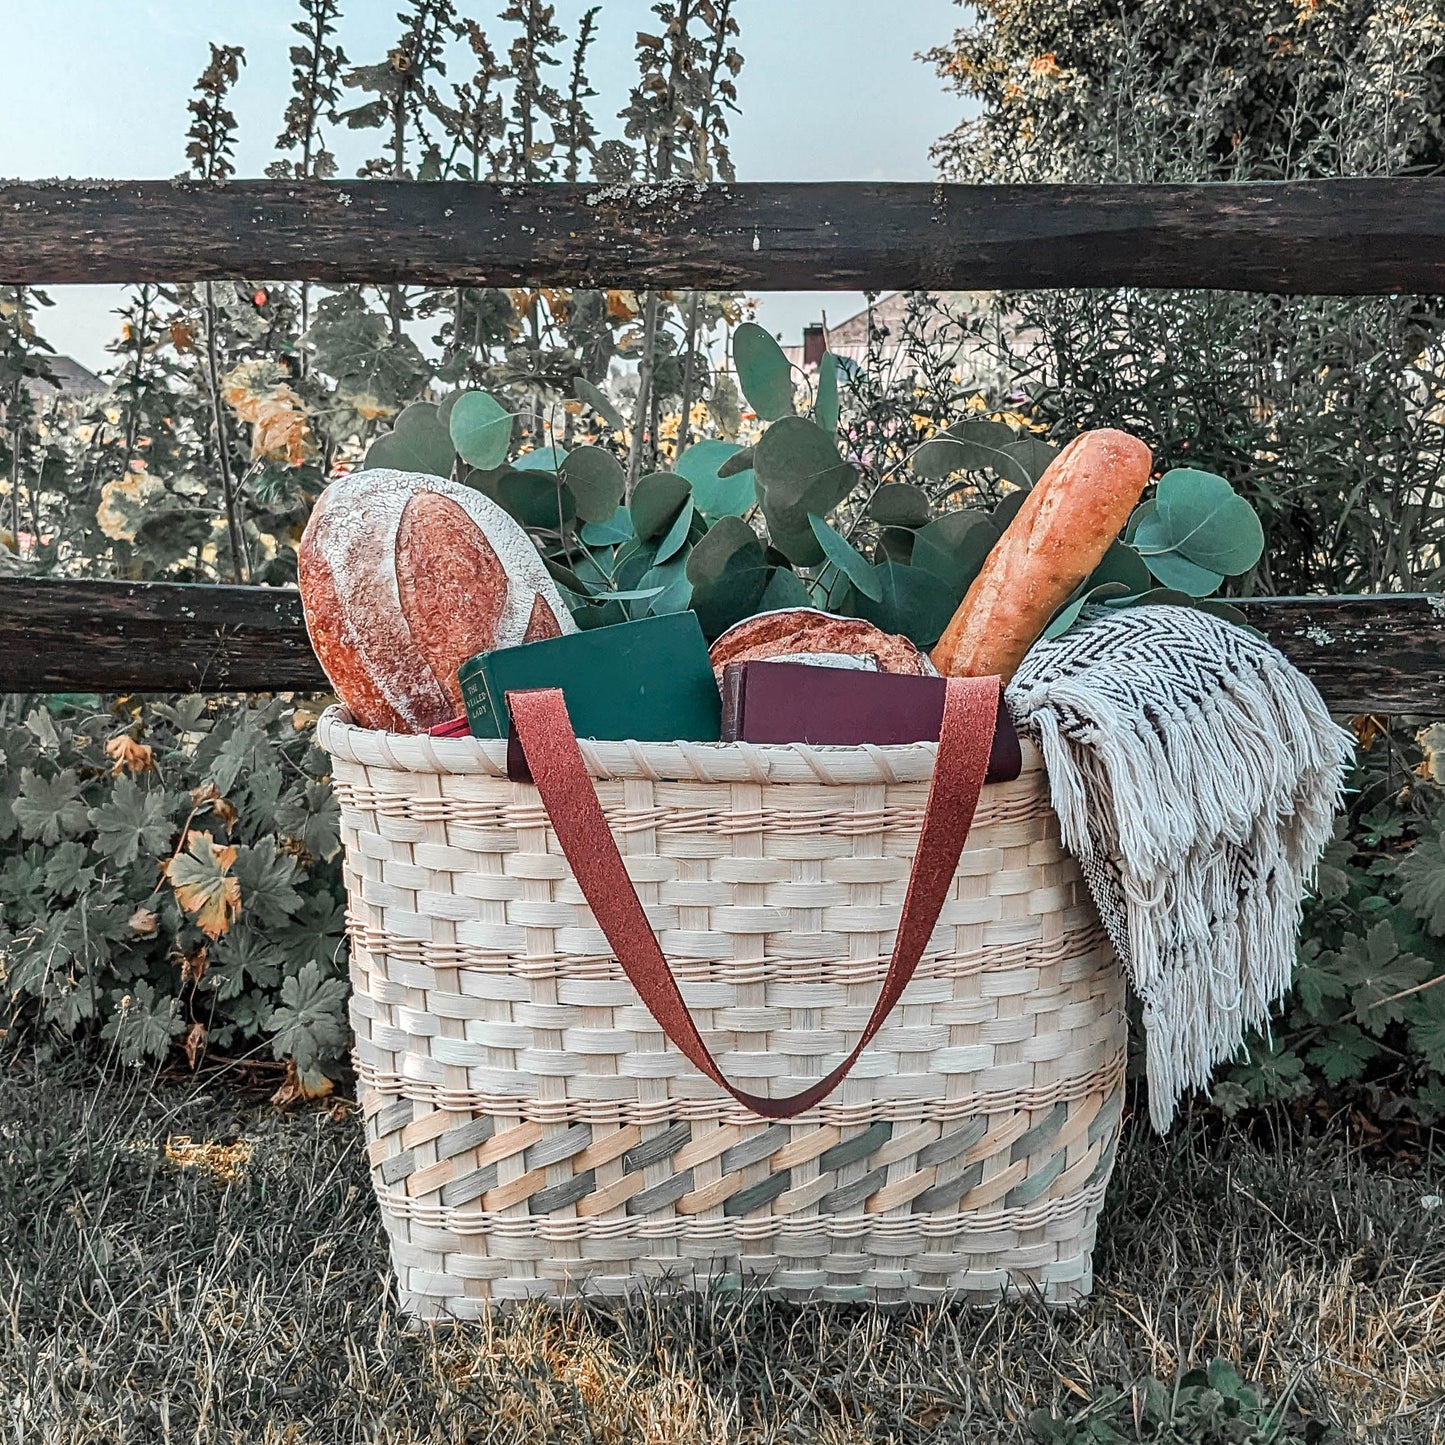 Randed Tote Basket Weaving Bundle